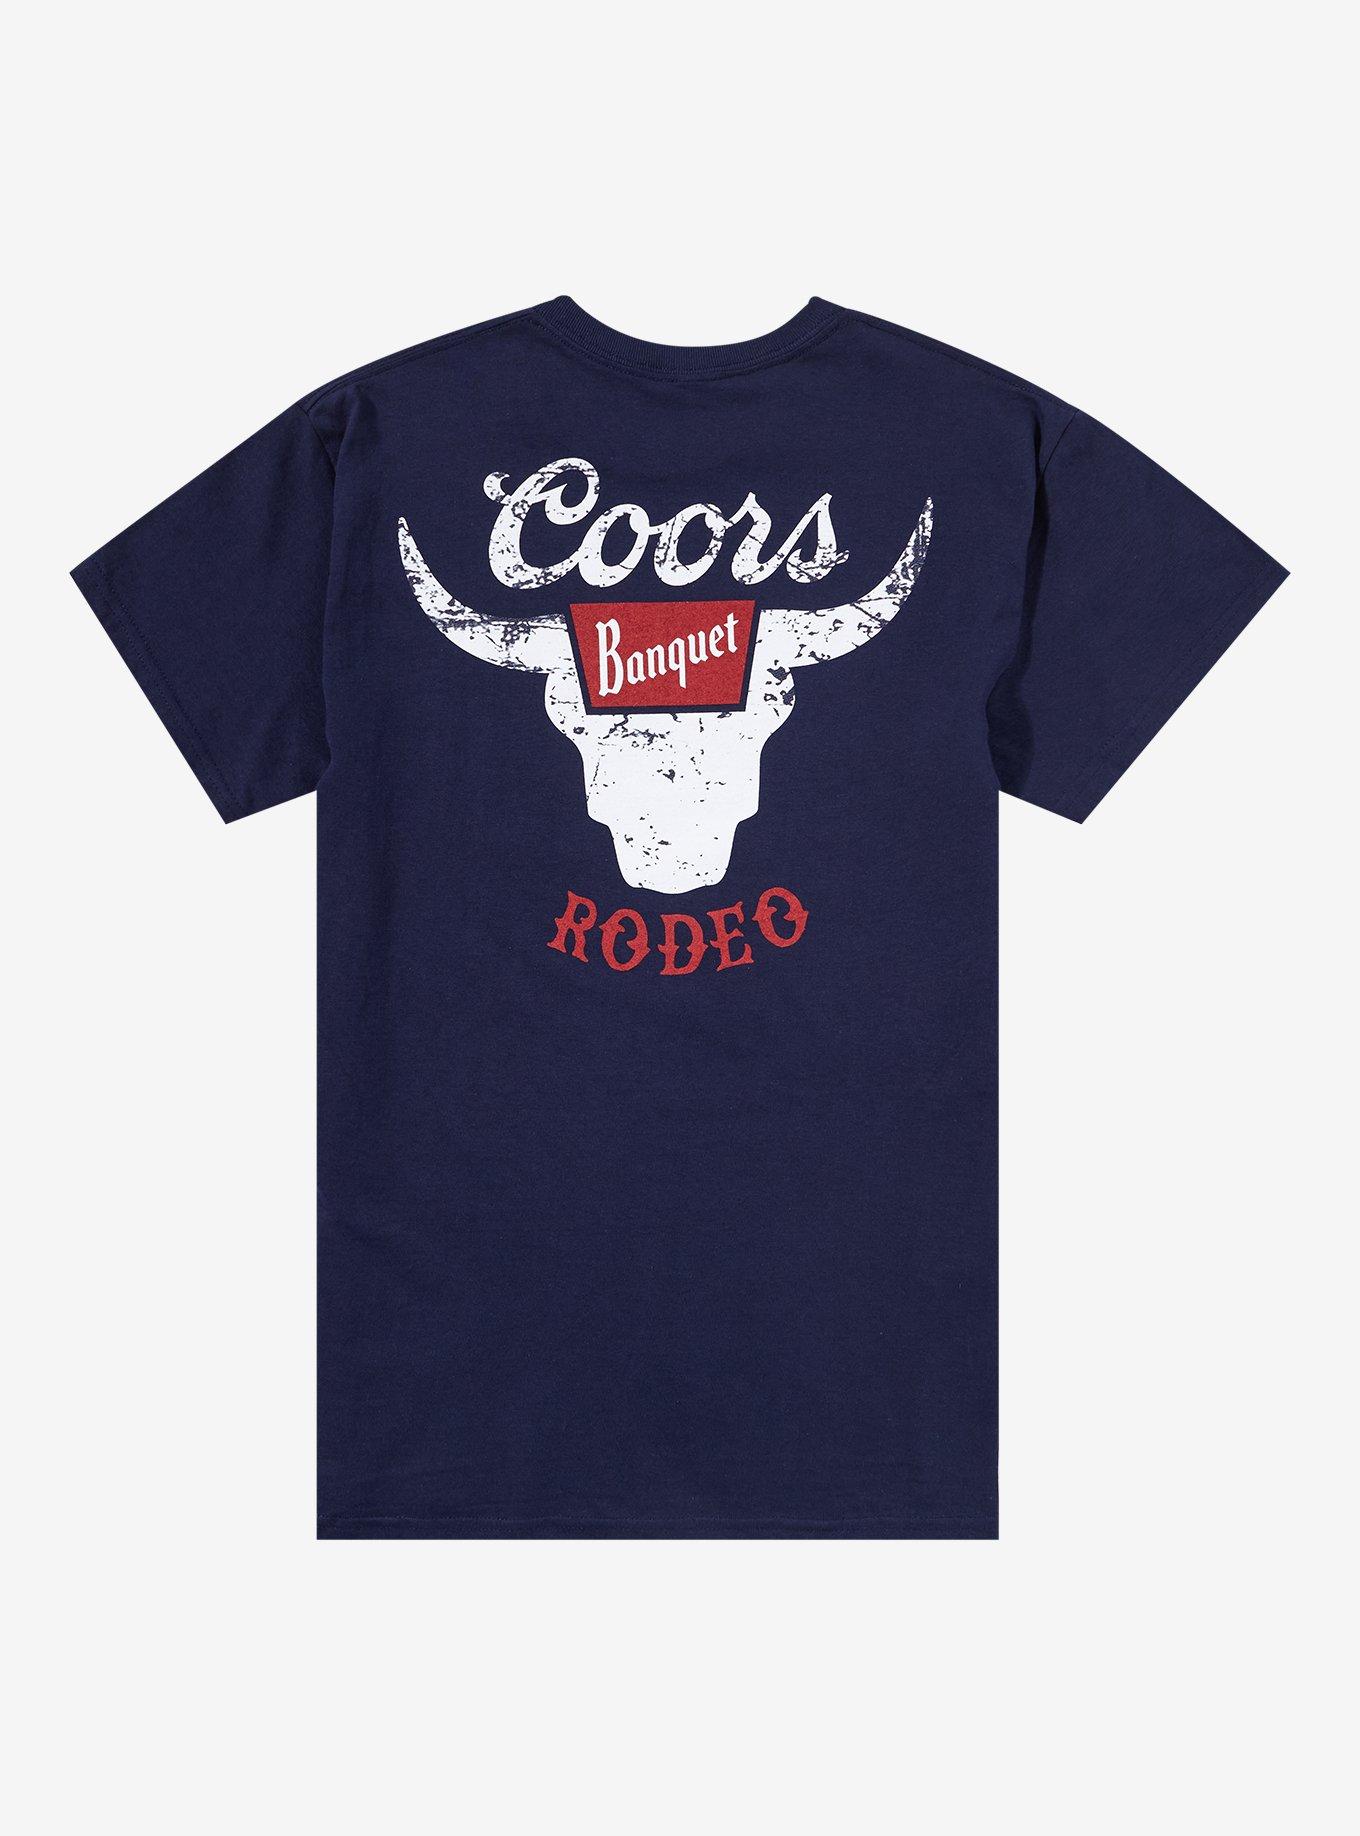 Coors Banquet Rodeo Longhorn T-Shirt, NAVY, alternate